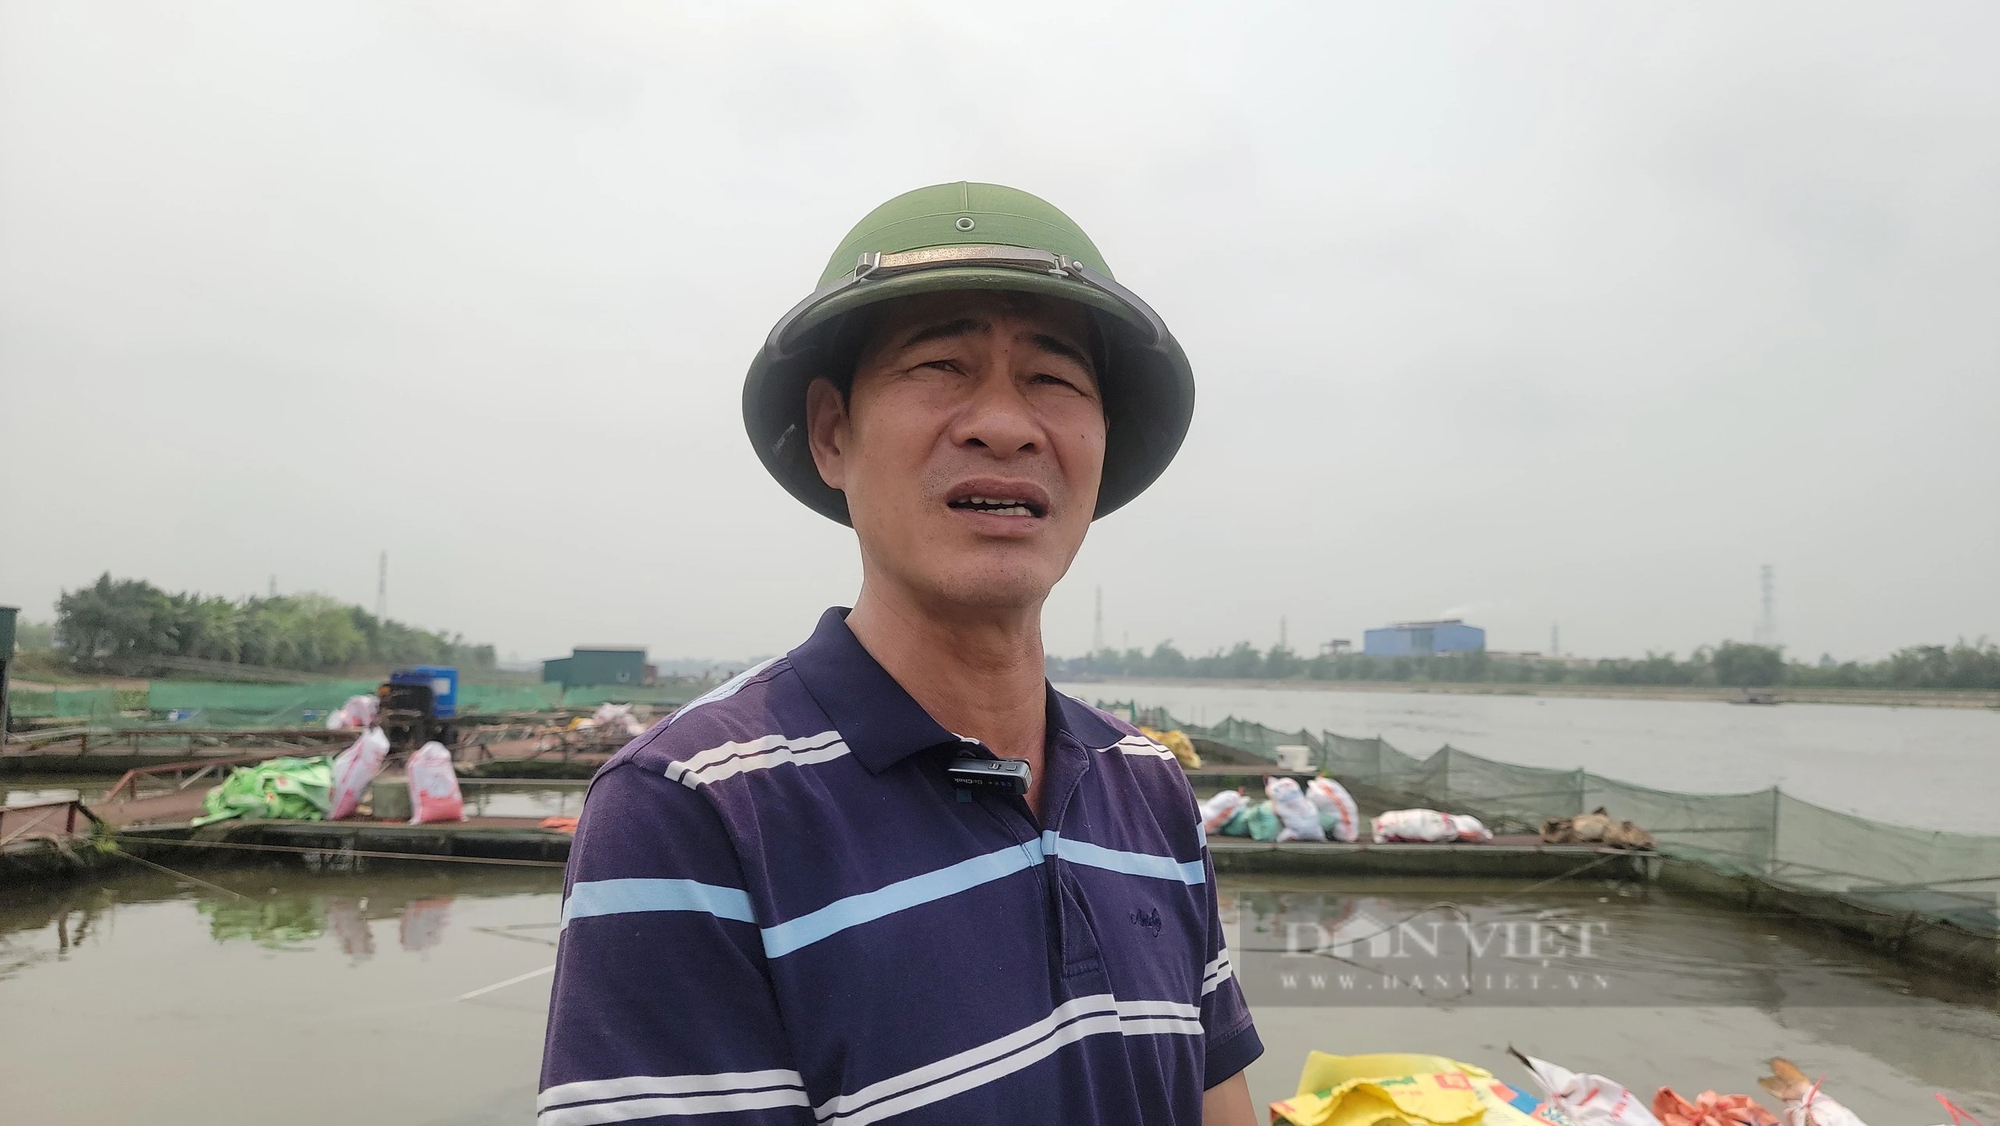 Cá nuôi trên sông Thái Bình chết trắng lồng, Chủ tịch UBND tỉnh Hải Dương chỉ đạo khẩn trương xác định nguyên nhân - Ảnh 4.